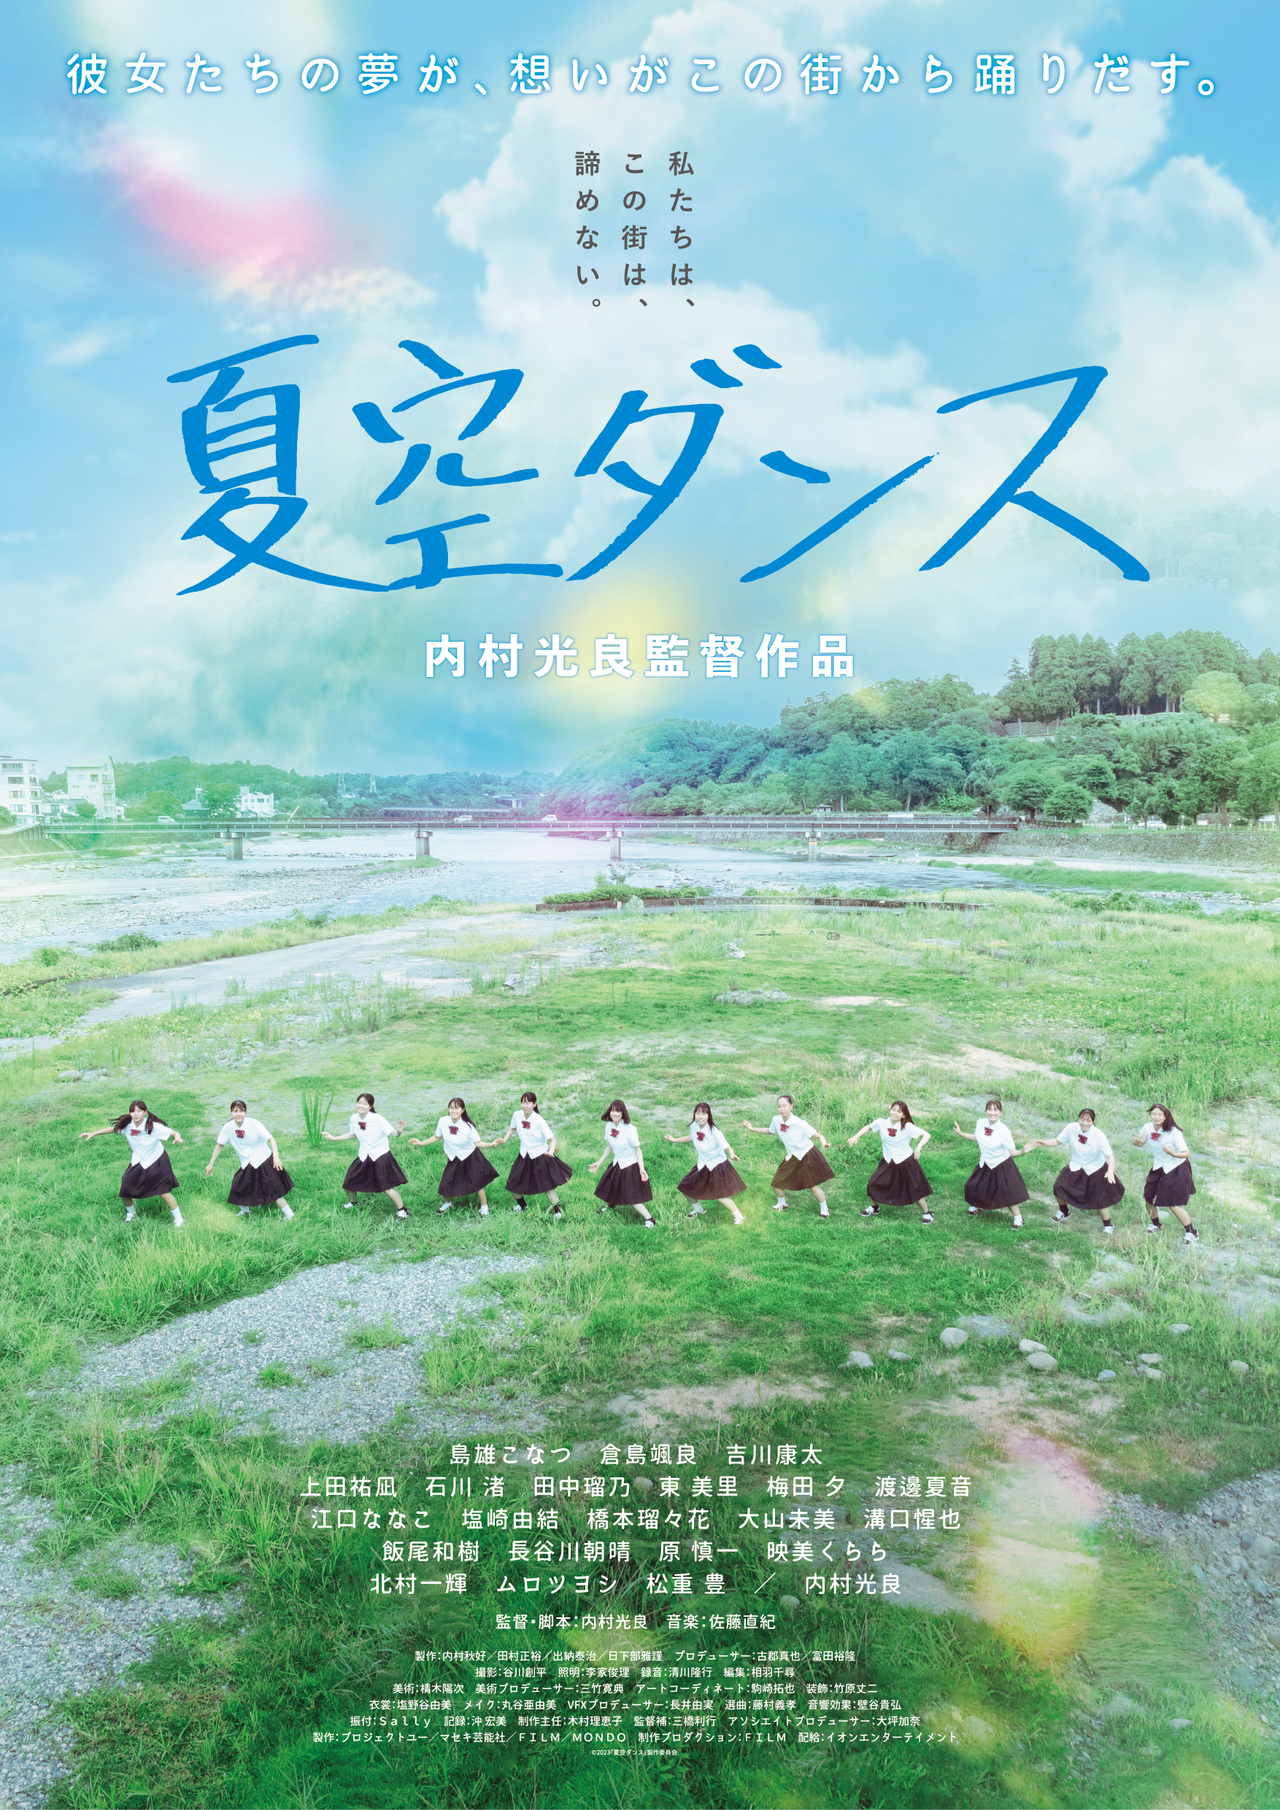 内村光良の監督最新作「夏空ダンス」6月30日から限定公開 故郷を舞台にした青春物語